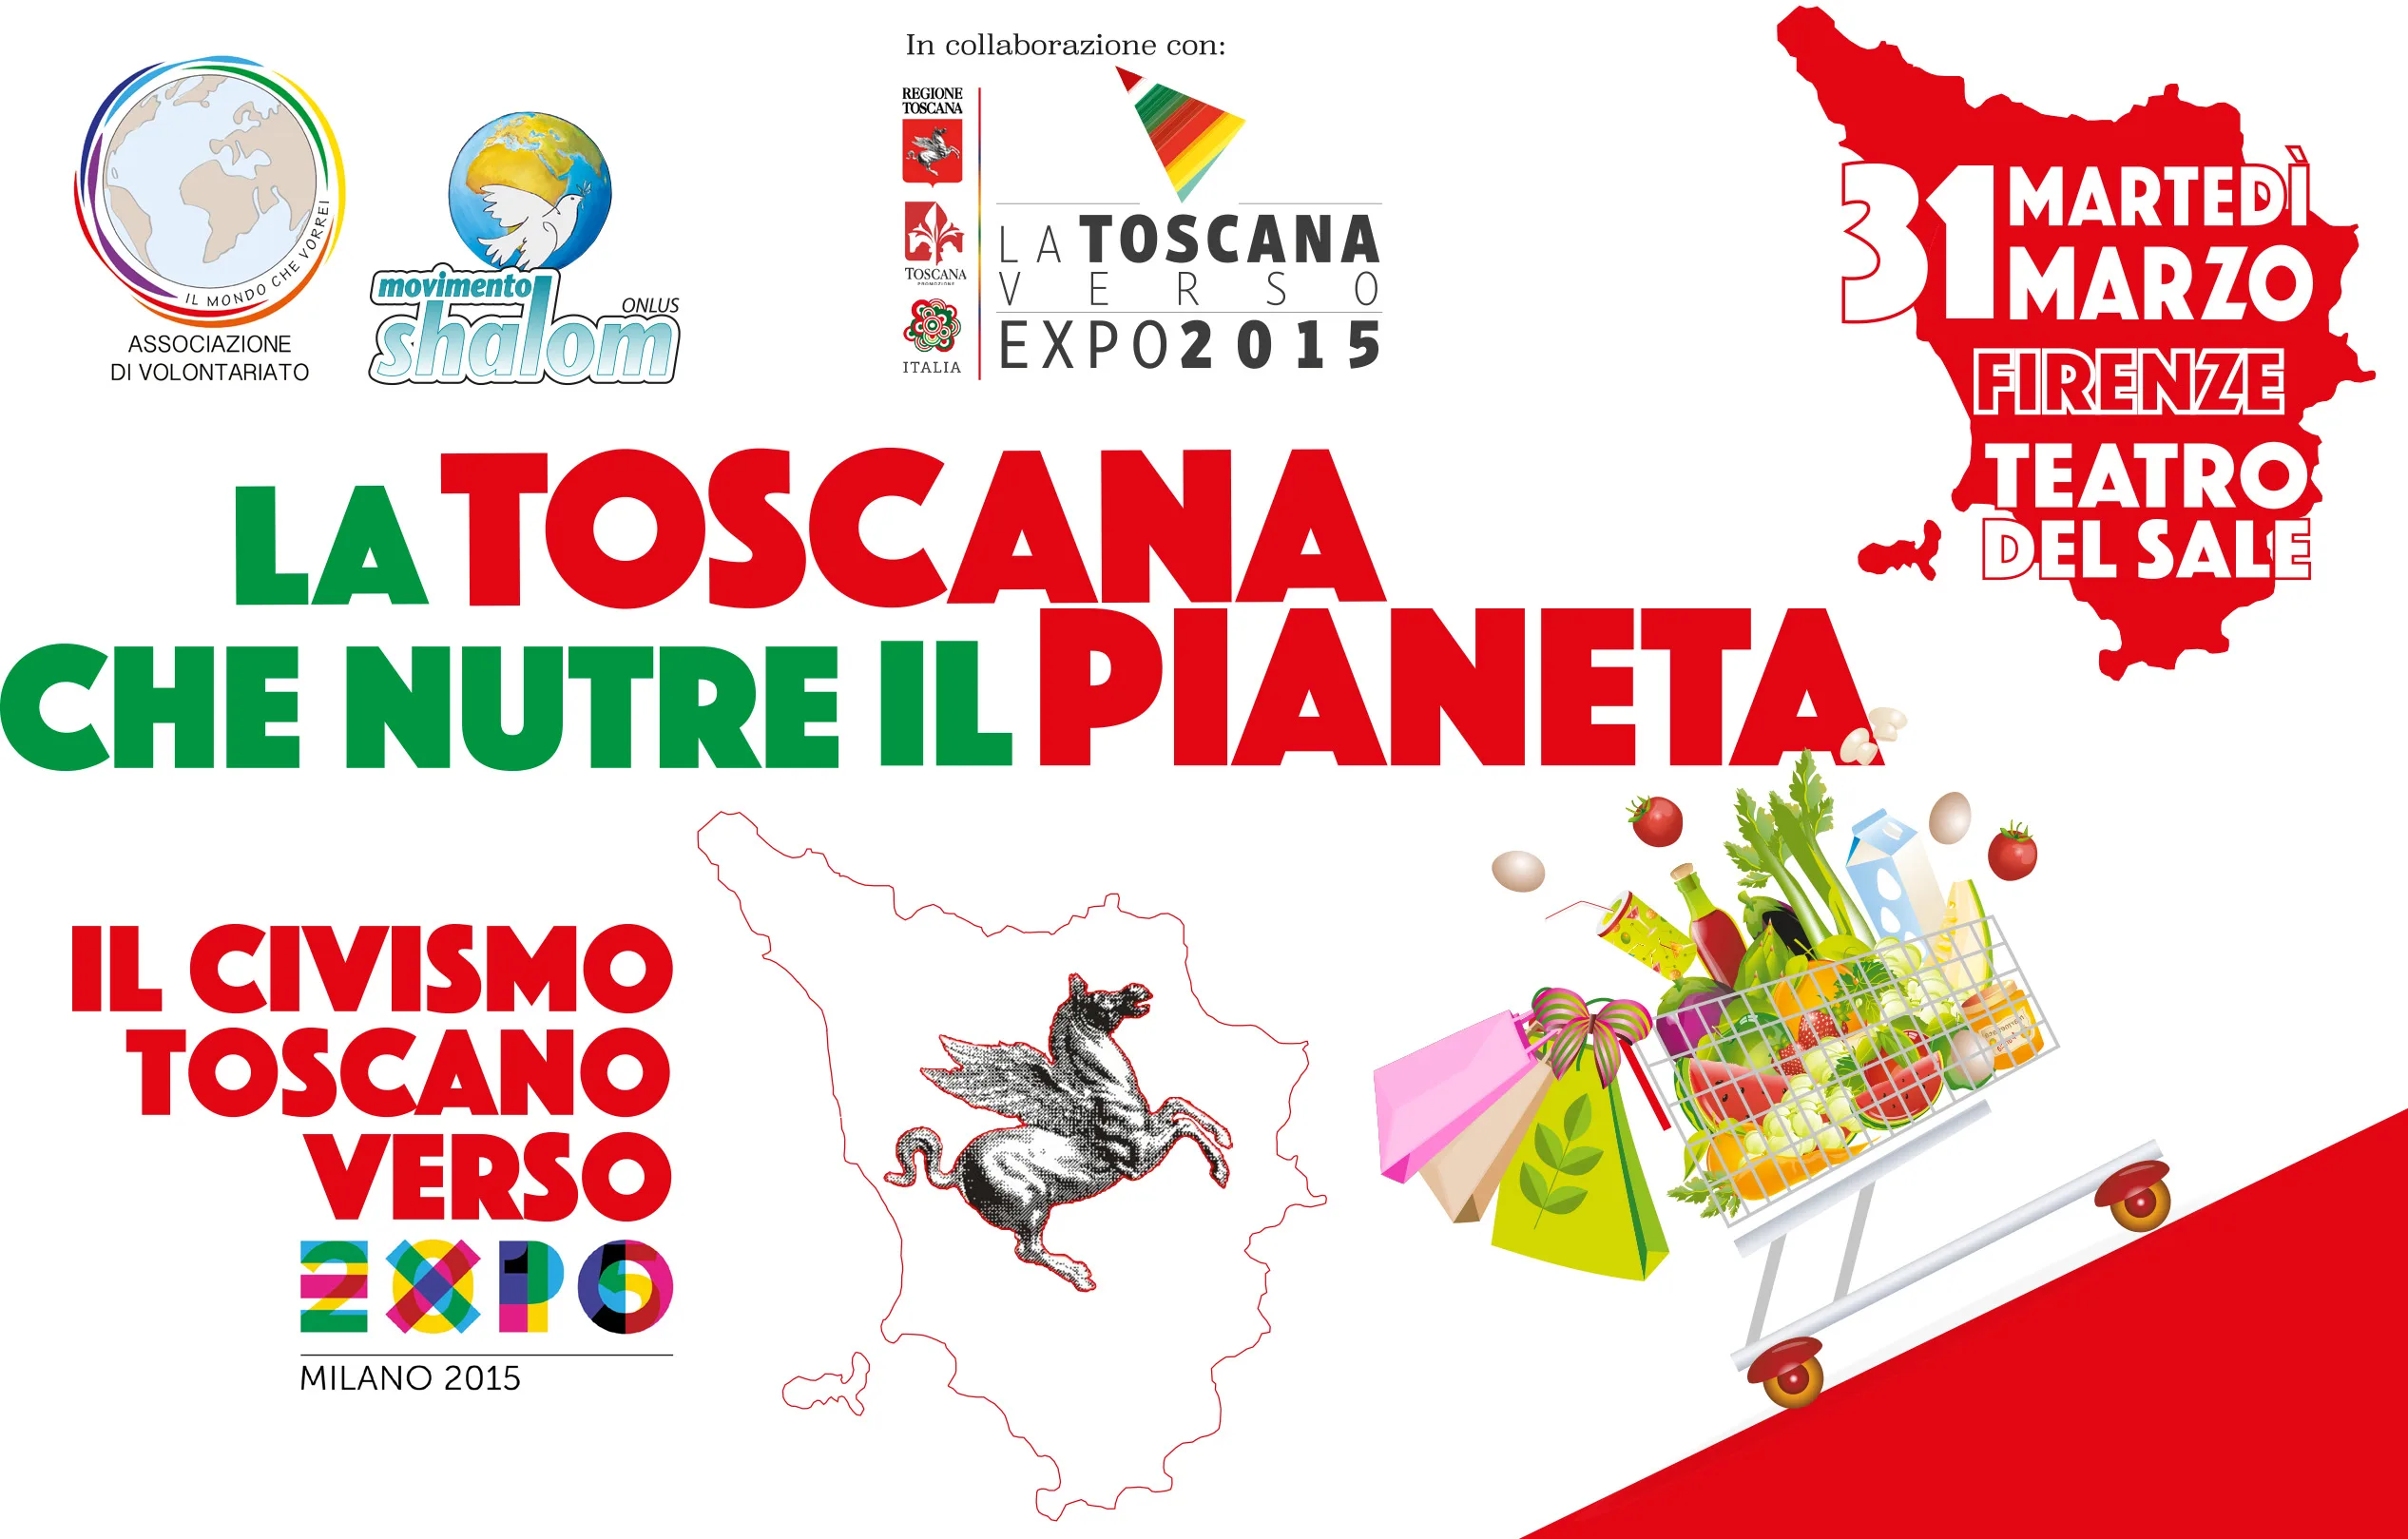 "La Toscana che nutre il Pianeta: il civismo toscano verso Expo" il 31 marzo a Firenze